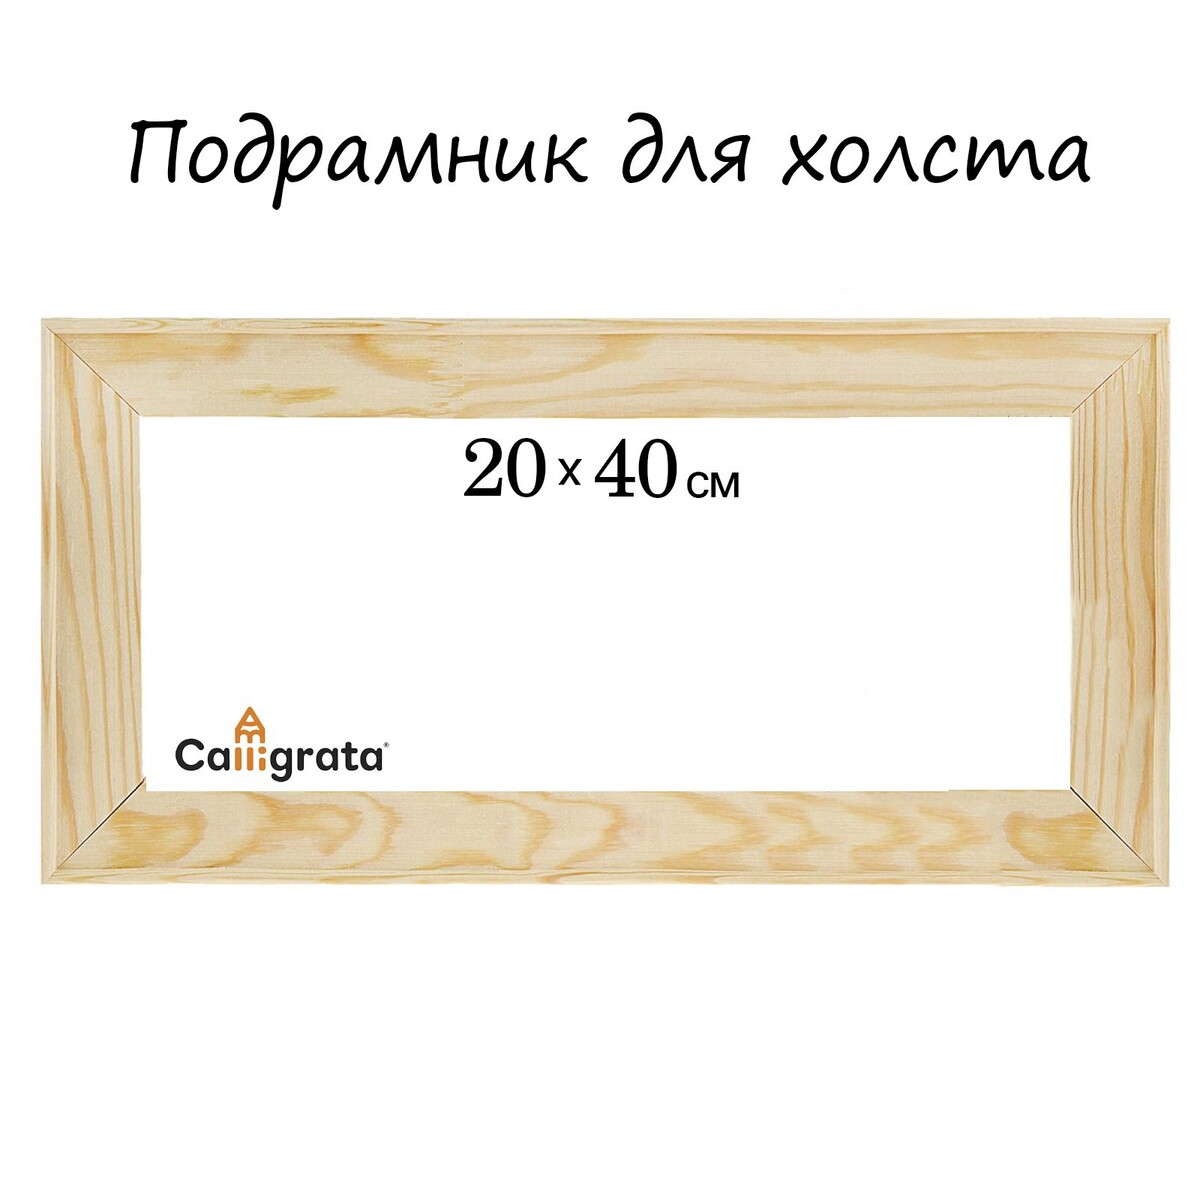 Подрамник для холста calligrata, 1.8 x 20 x 40 см, ширина рамы 36 мм, сосна